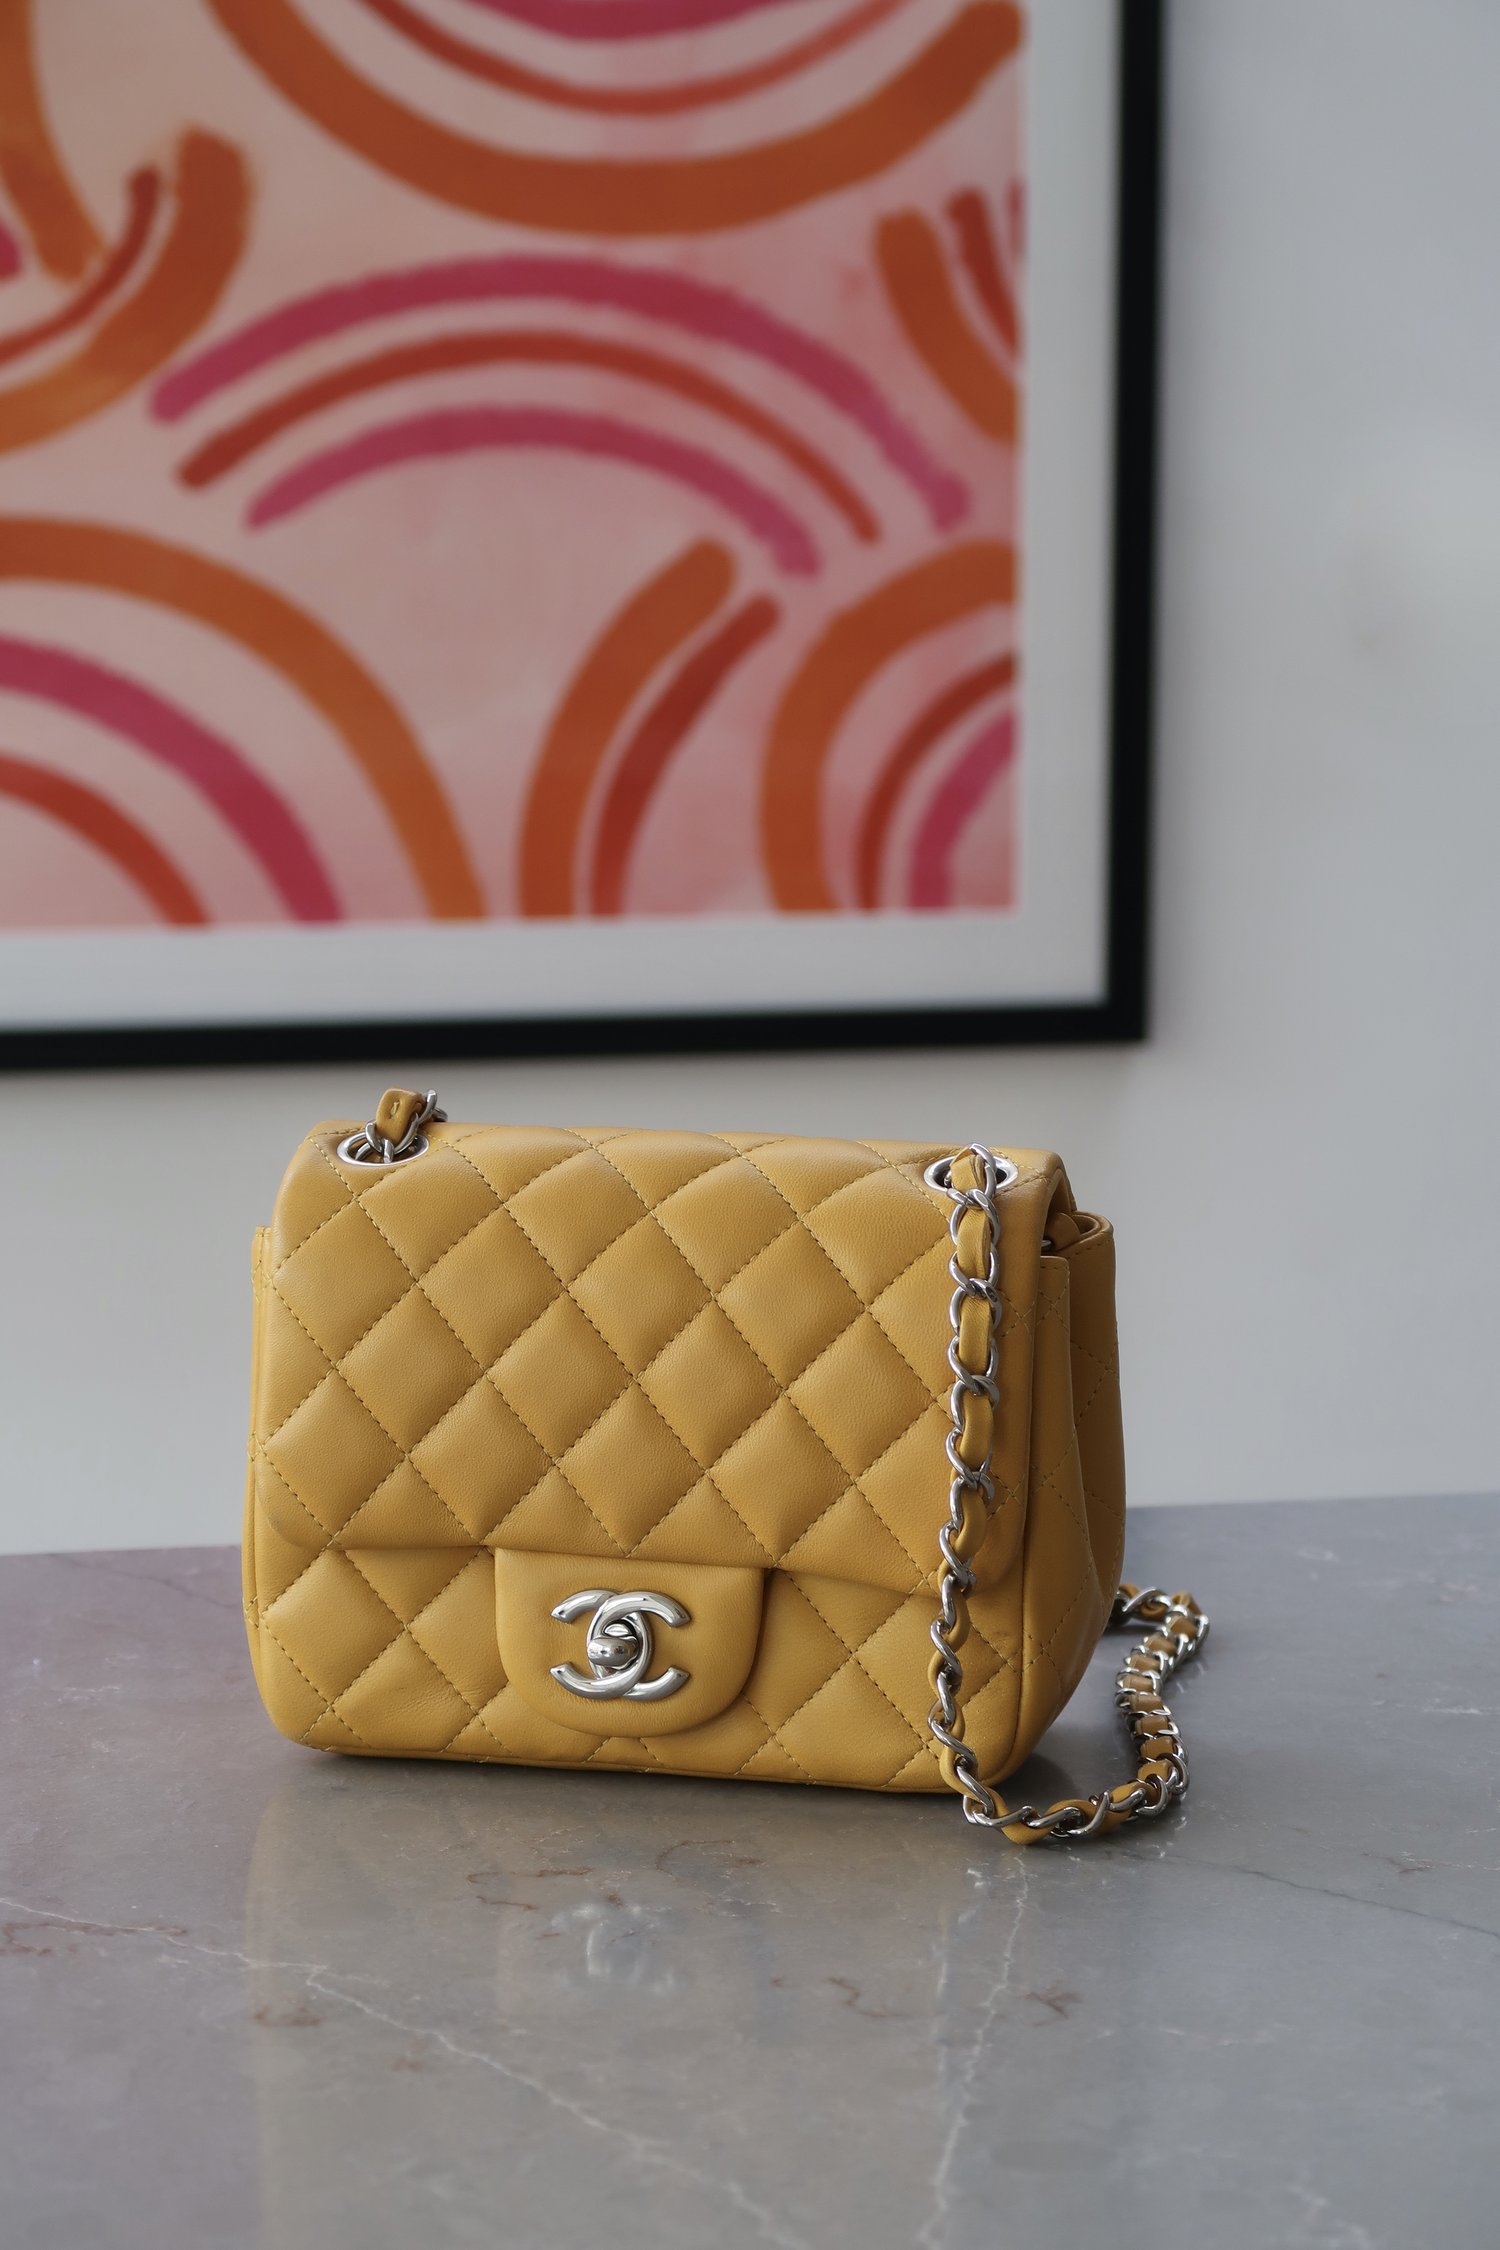 Chanel Classic Flap Bag in Velvet